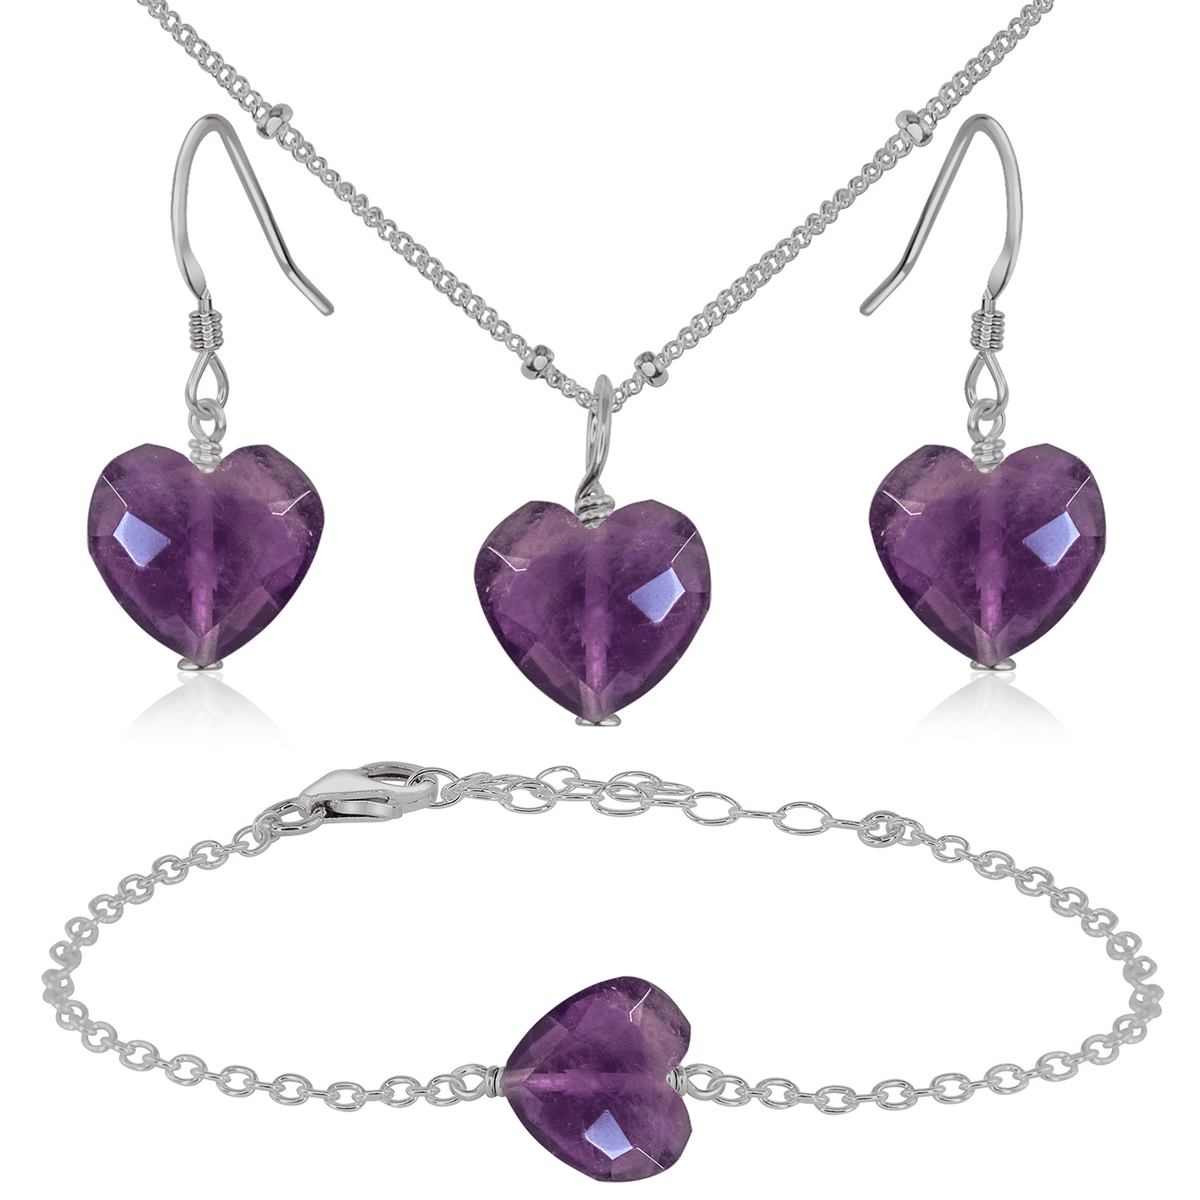 Amethyst Crystal Heart Jewellery Set - Amethyst Crystal Heart Jewellery Set - Stainless Steel / Satellite / Necklace & Earrings & Bracelet - Luna Tide Handmade Crystal Jewellery